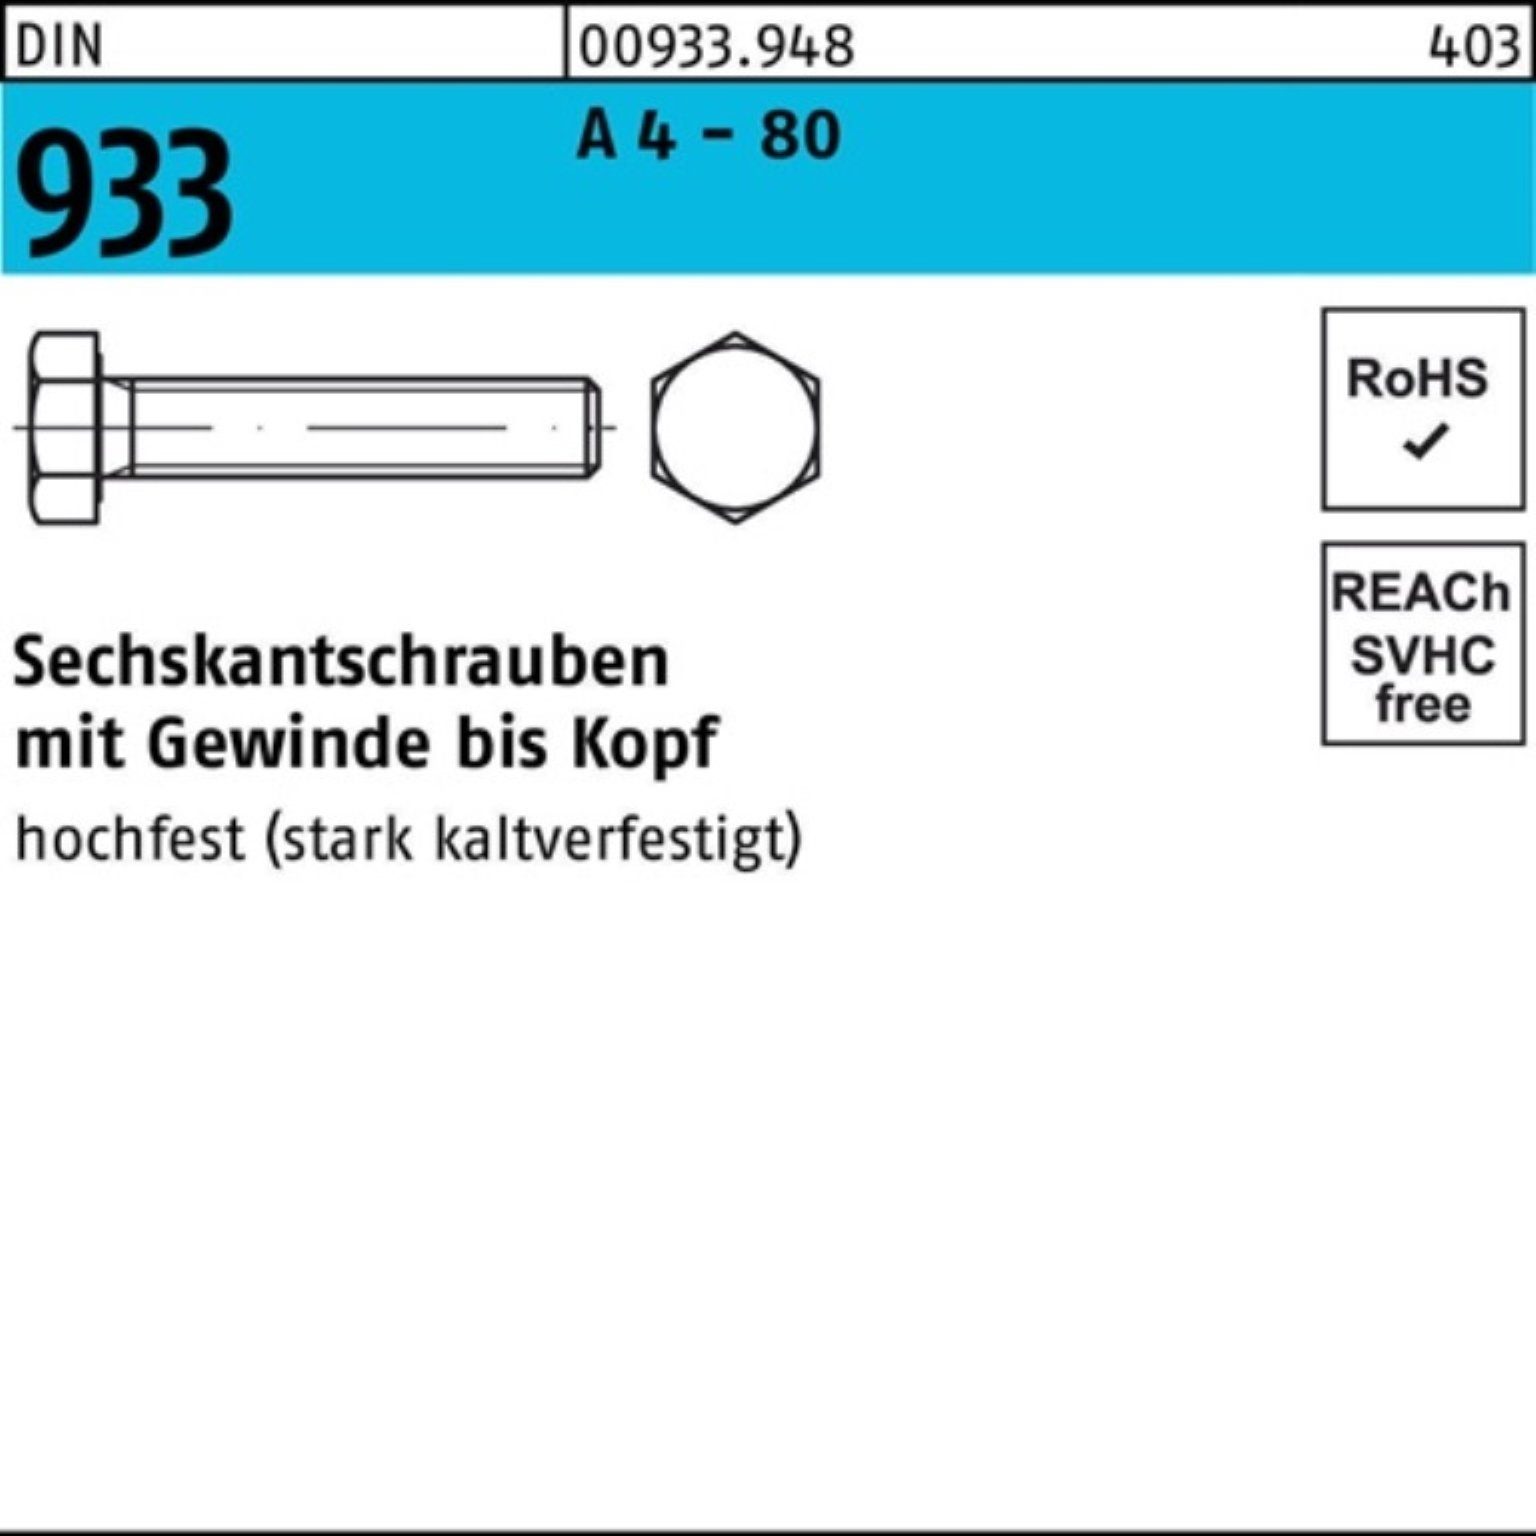 Reyher Sechskantschraube 100er Pack Sechskantschraube DIN 933 VG M6x 10 A 4 - 80 100 Stück DIN